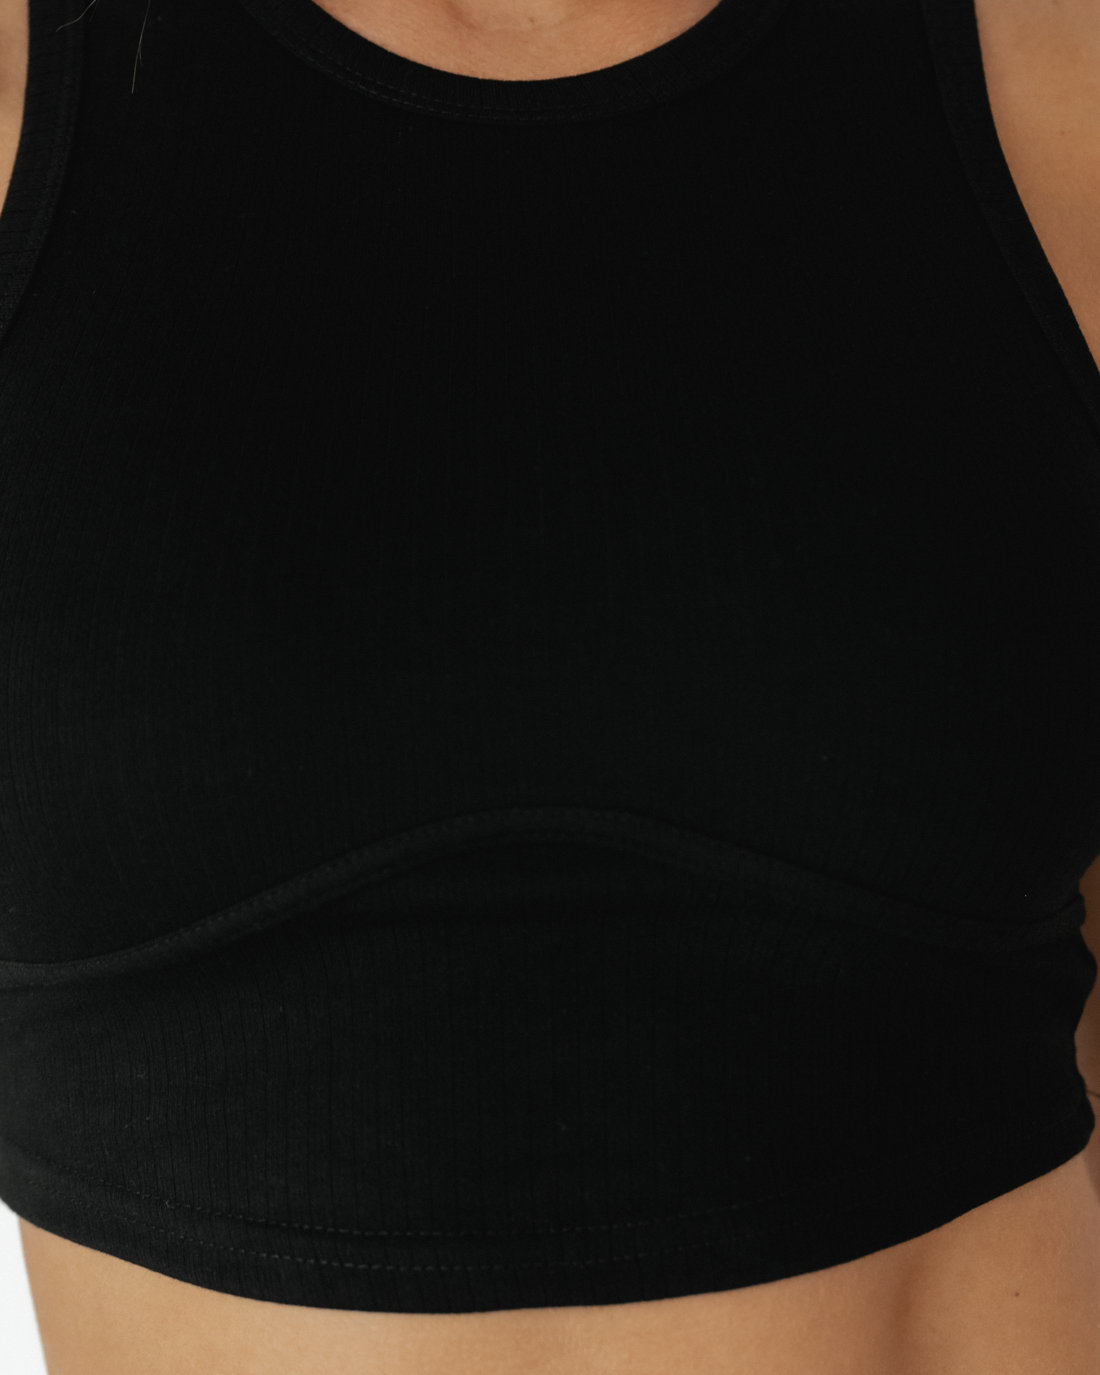 Hazel Crop Top (Black) - Curved Hem Crop Top - Women's Top - Charcoal Clothing